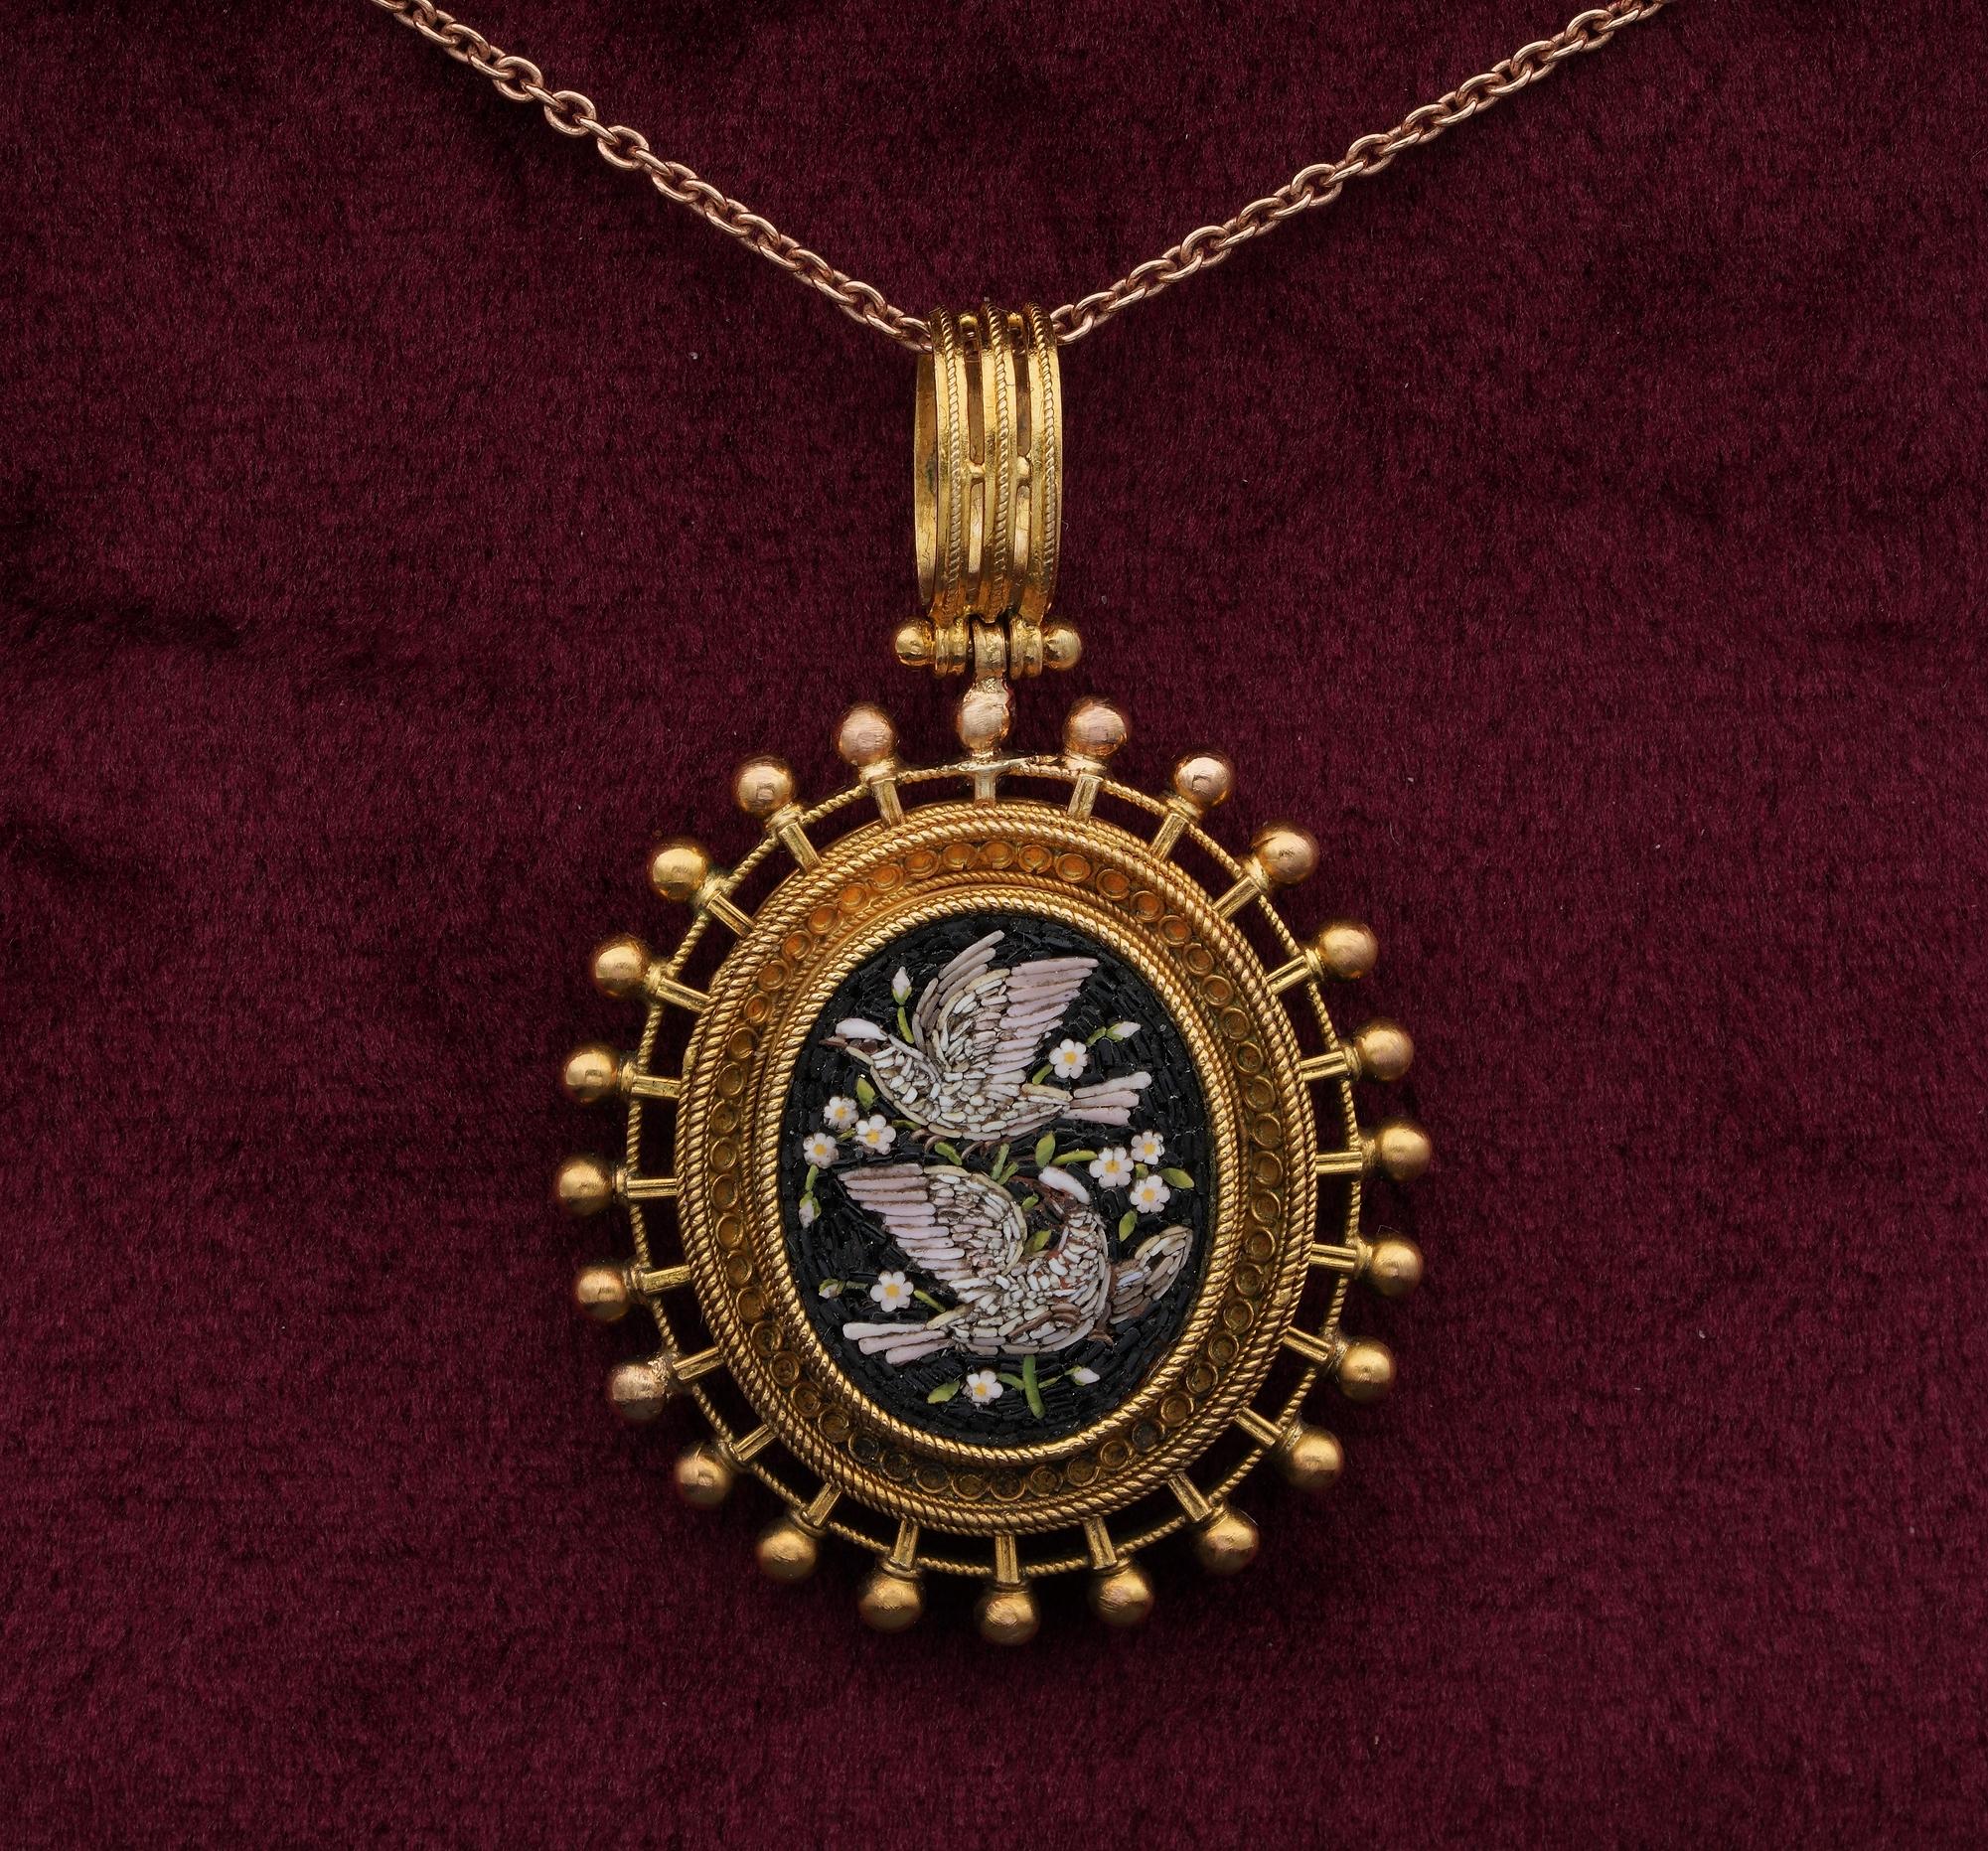 Viktorianisch meistgesucht
Diese schöne viktorianische Periode 18 KT Gold wurde von Hand gefertigt aus massivem 18 KT getestet
Ein sehr schönes und unverwechselbares Goldkunstwerk mit einem Perlenrahmen, der mehrere Reihen von Seilen umgibt, mit